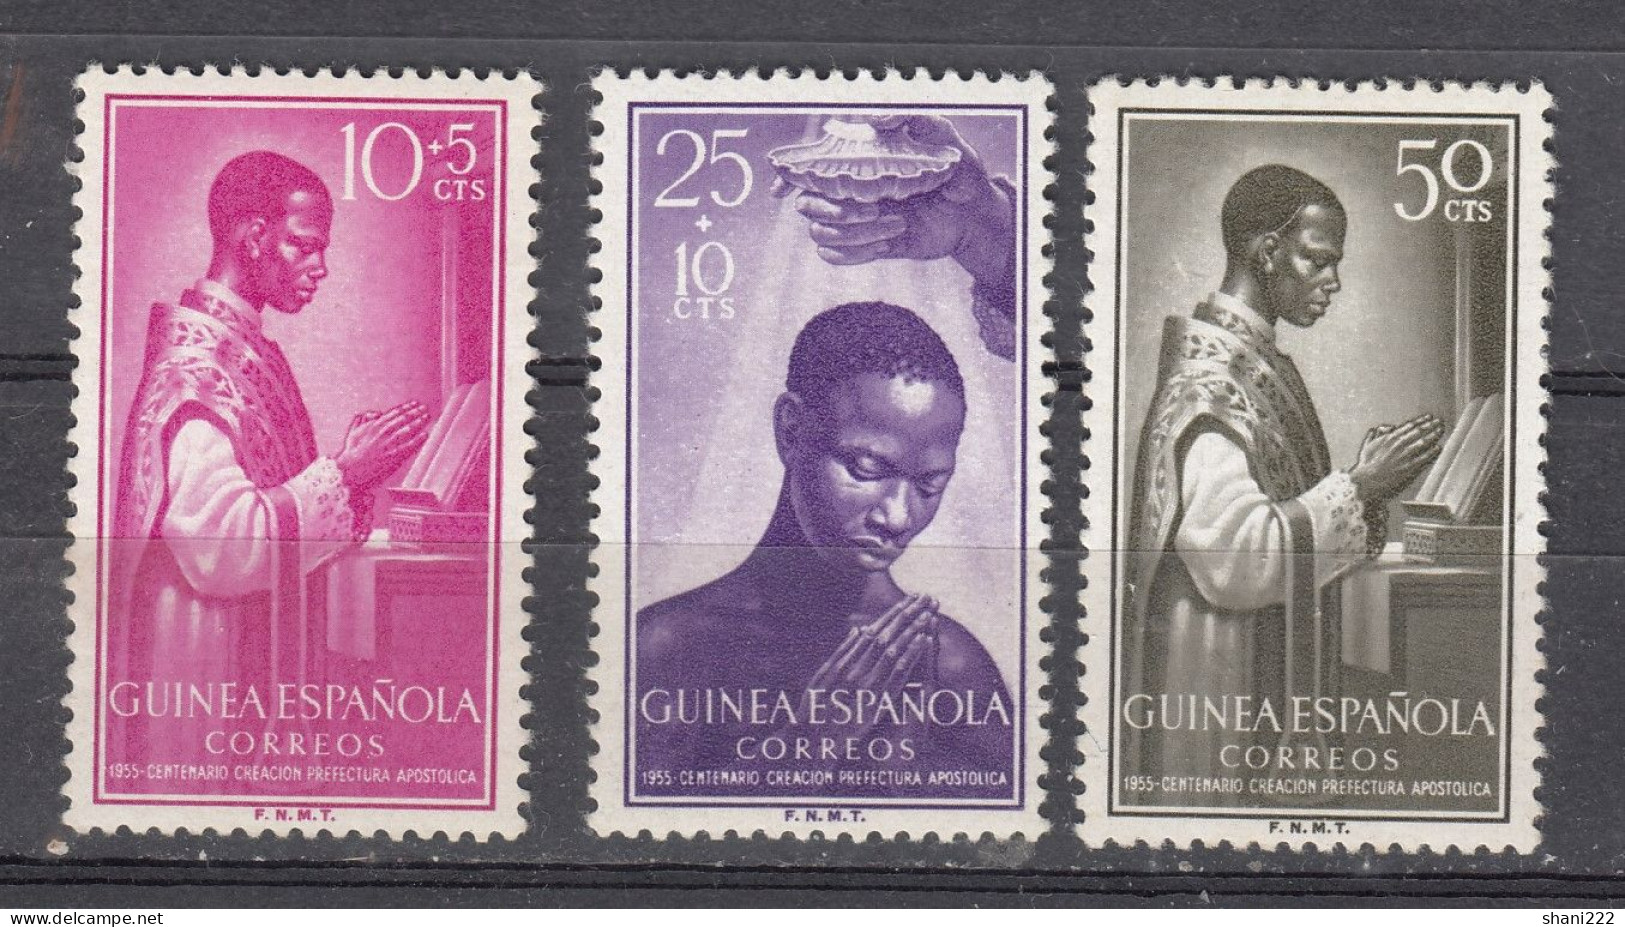 Spanish Guinea - 1955 Prefectura Apostolica - MNH (e-812) - Guinée Espagnole